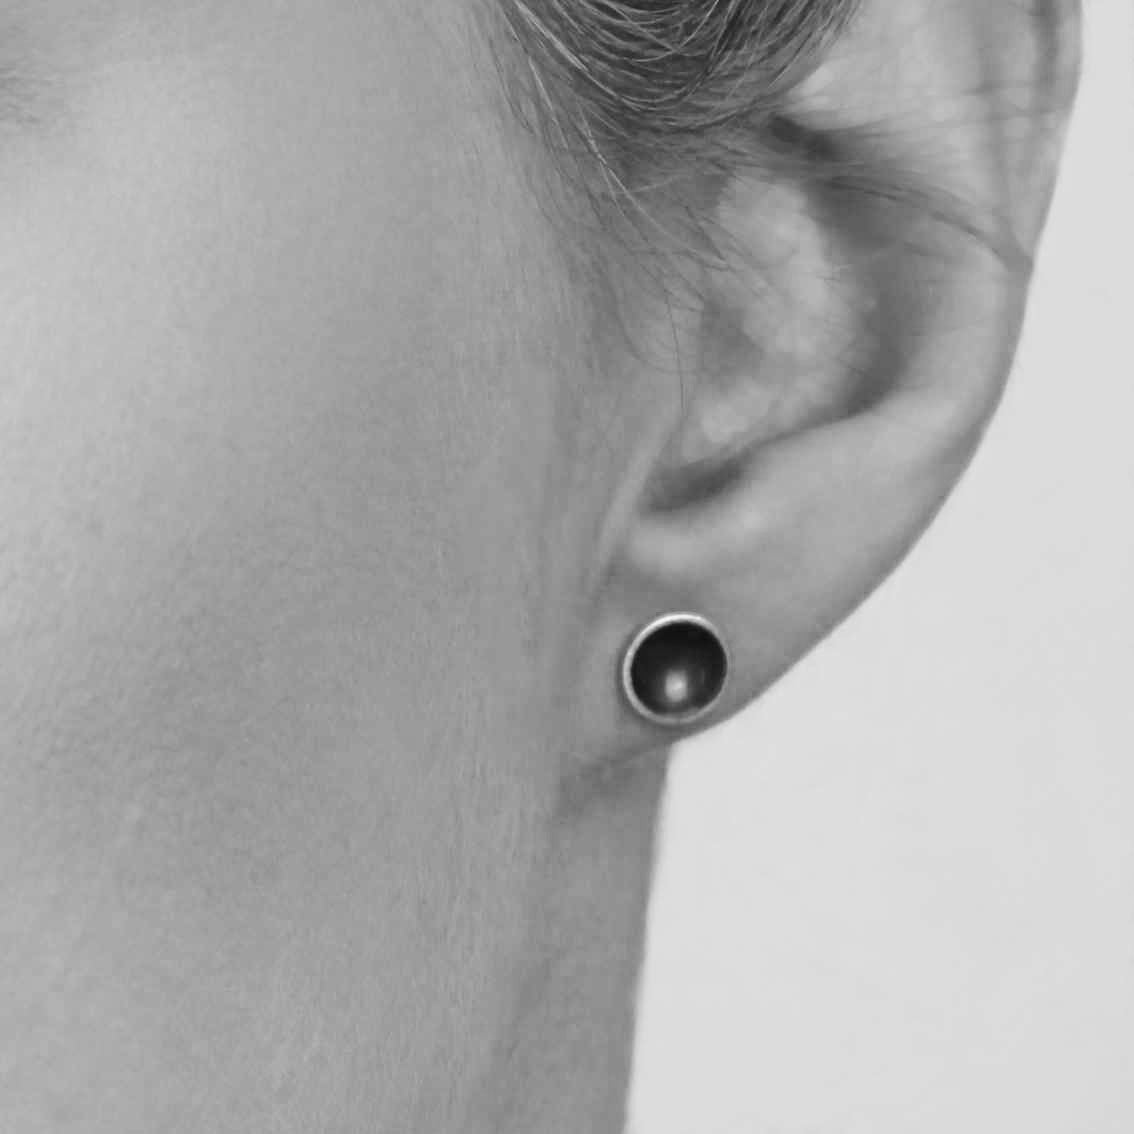 Halo Midi Oxidised Silver Stud Earrings